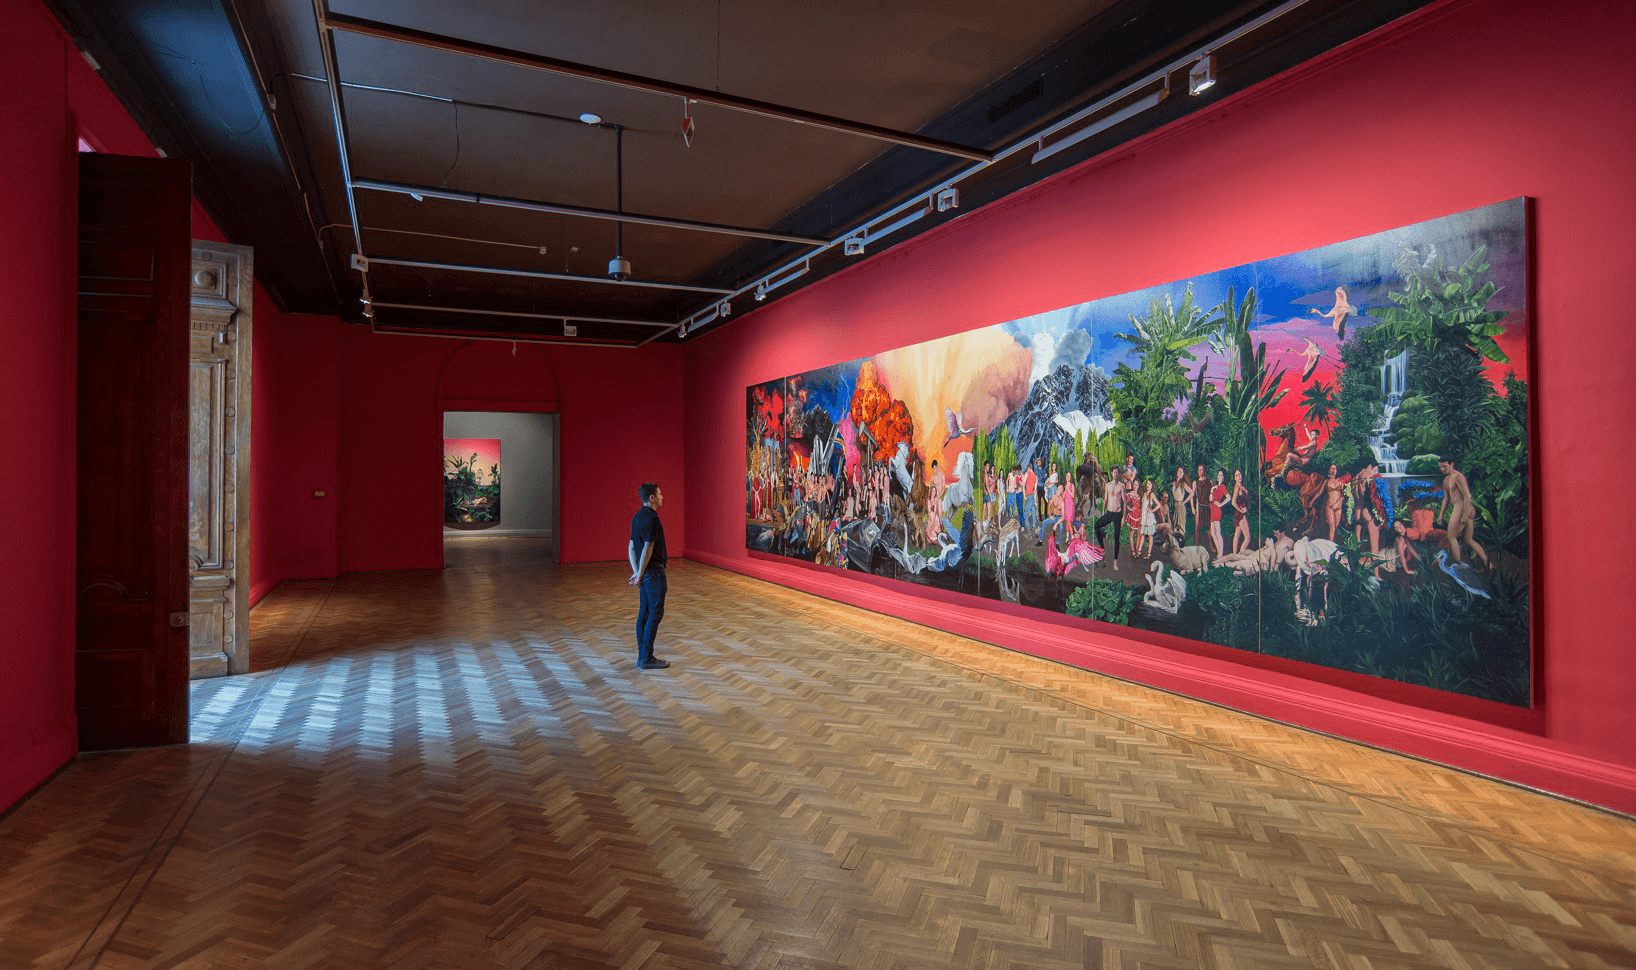 Vista de la exposición "Historia violenta y luminosa", de José Pedro Godoy, en el MNBA, Santiago de Chile, 2016-2017. Cortesía del artista